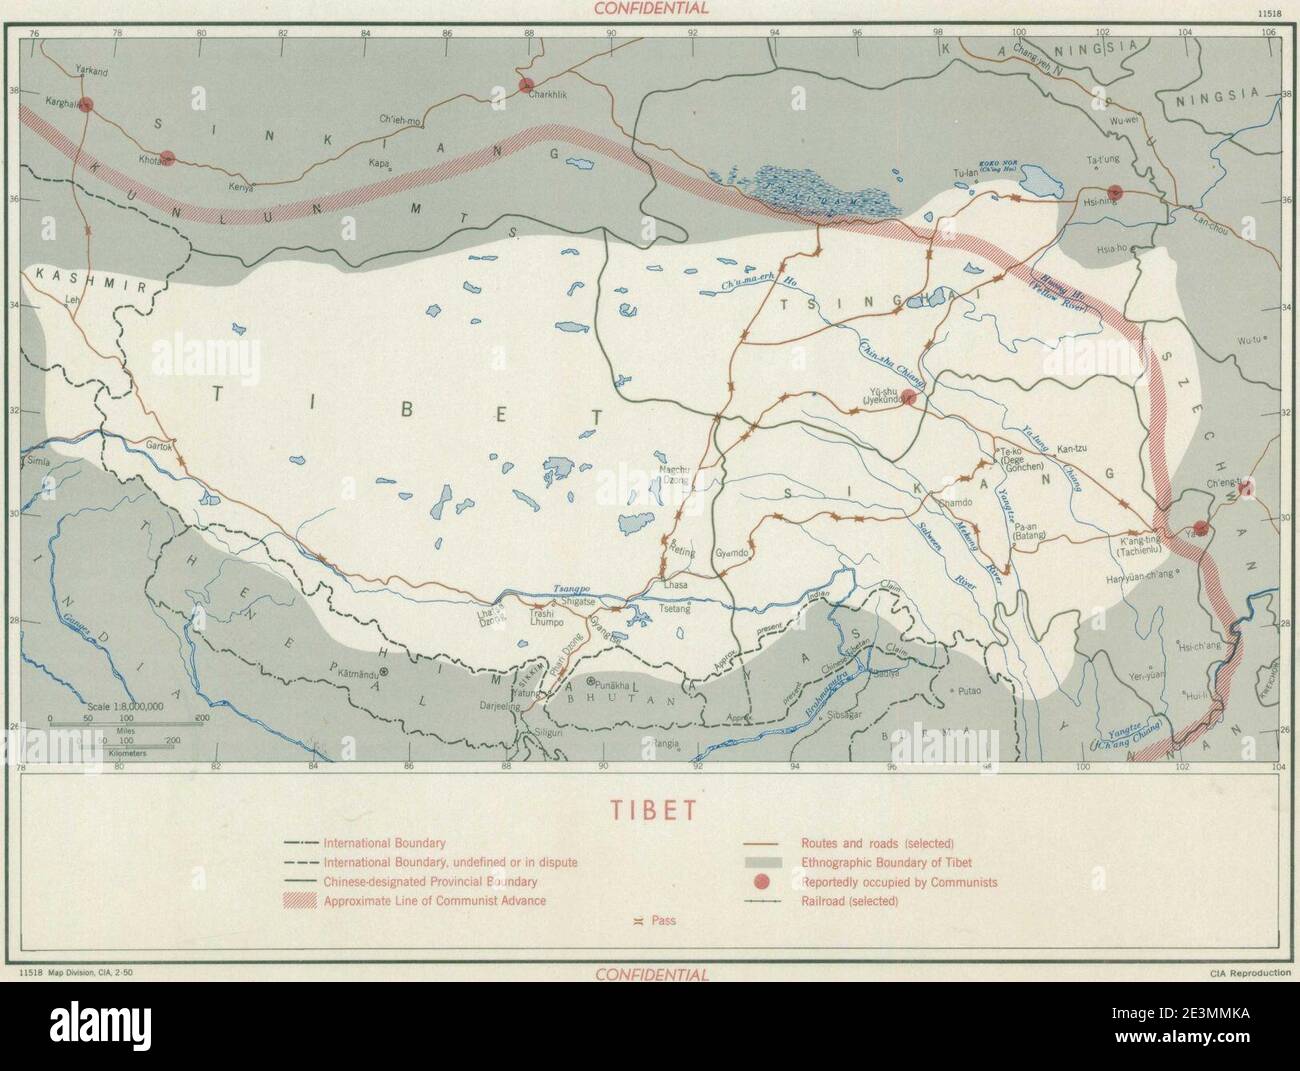 Mapa del Tíbet- ''TIBET CONFIDENCIAL'' ''límite etnográfico del Tíbet''''línea aproximada del avance comunista'' y ''supuestamente ocupado por comunistas'' ''11518, CIA, 2-50''' Febrero 1950 mapa- 305945 11518 01 (recortado). Foto de stock